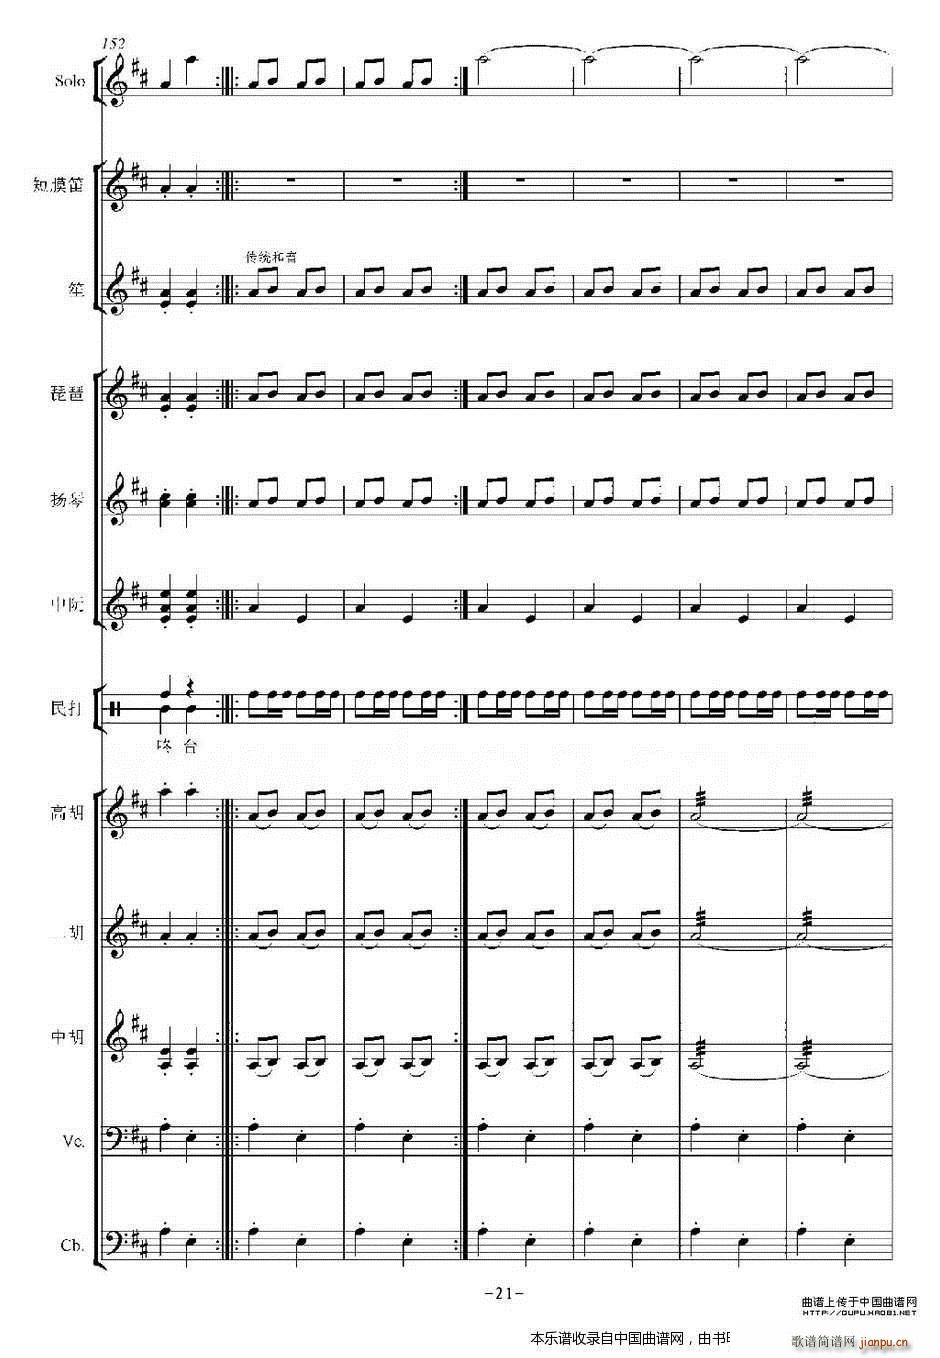 打枣 乐器谱(总谱)21